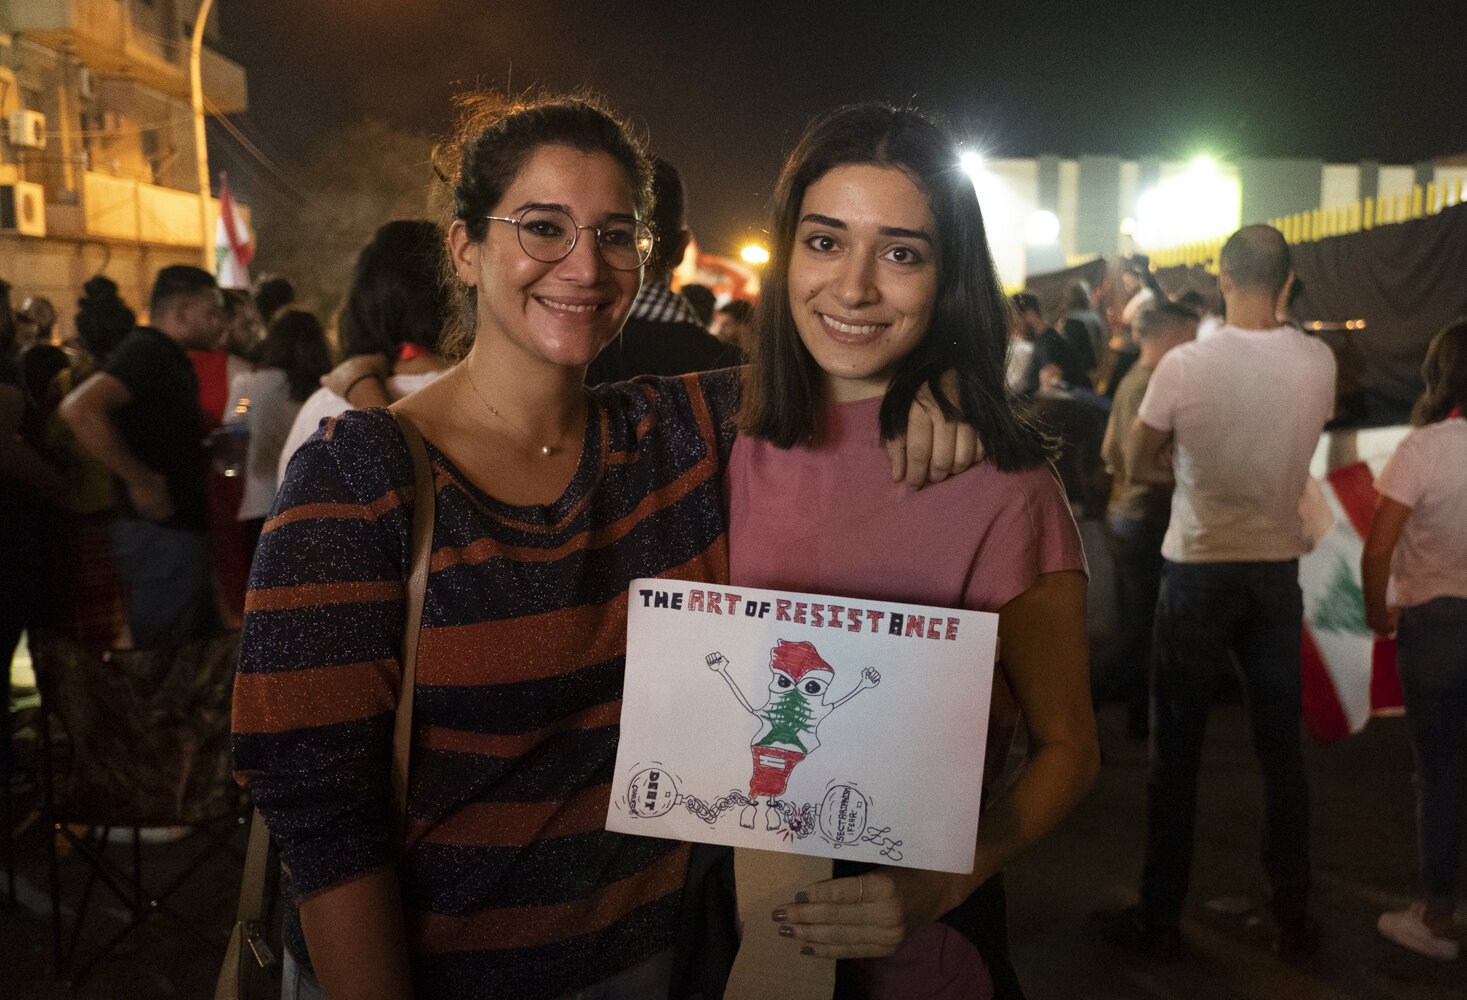 lebanon revolution 2019 - 12.jpg